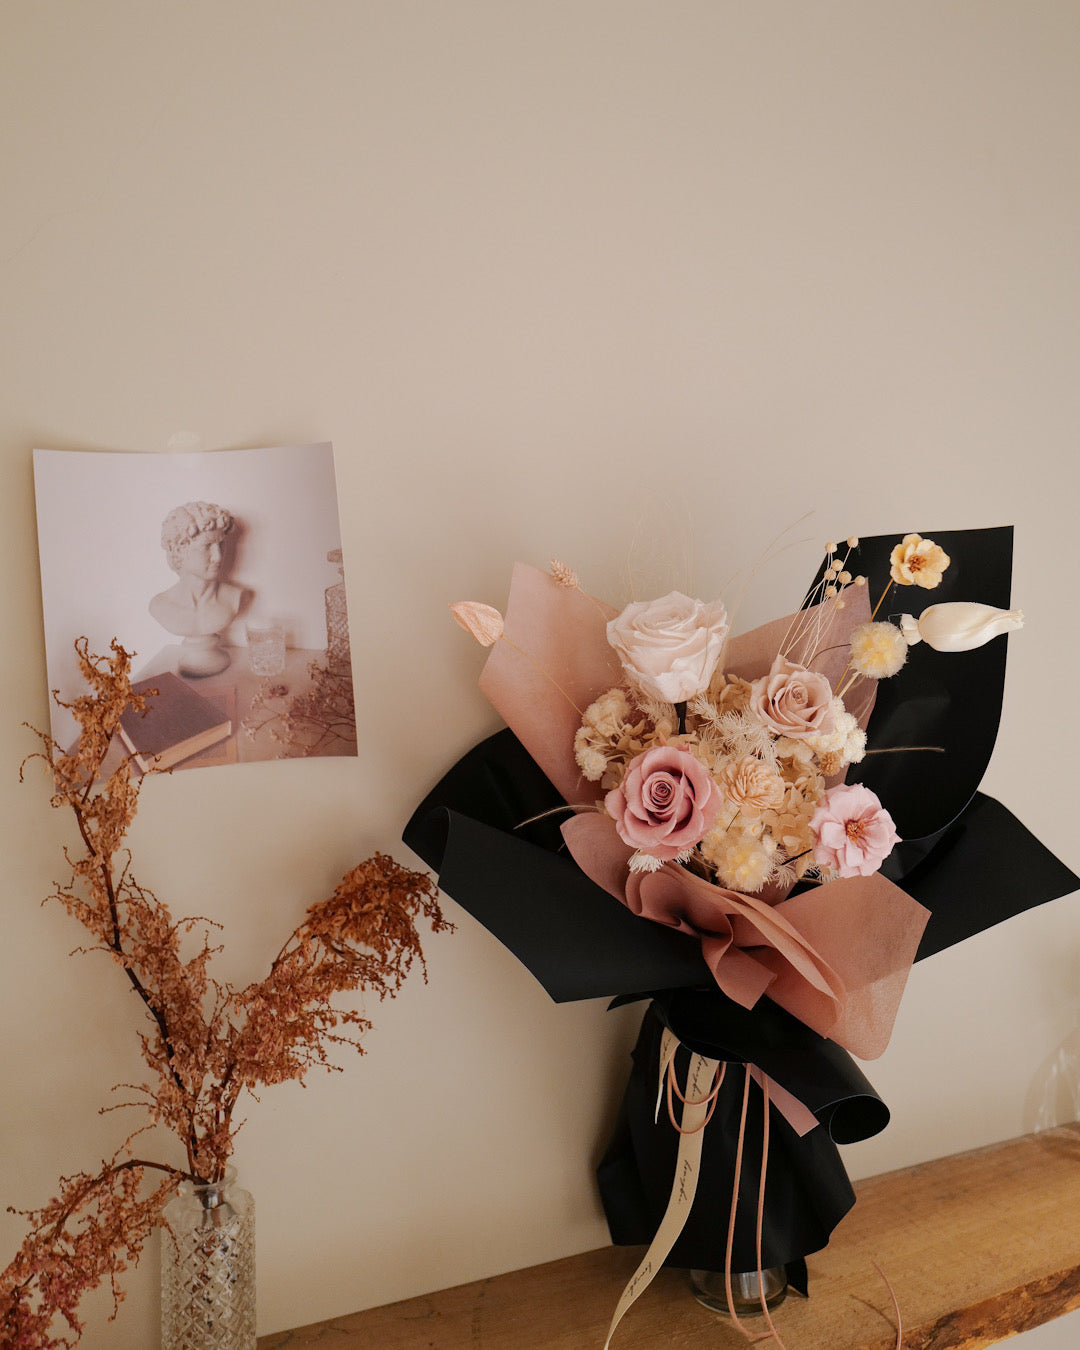 特調情人節永生花束 Preserved Flower Bouquet